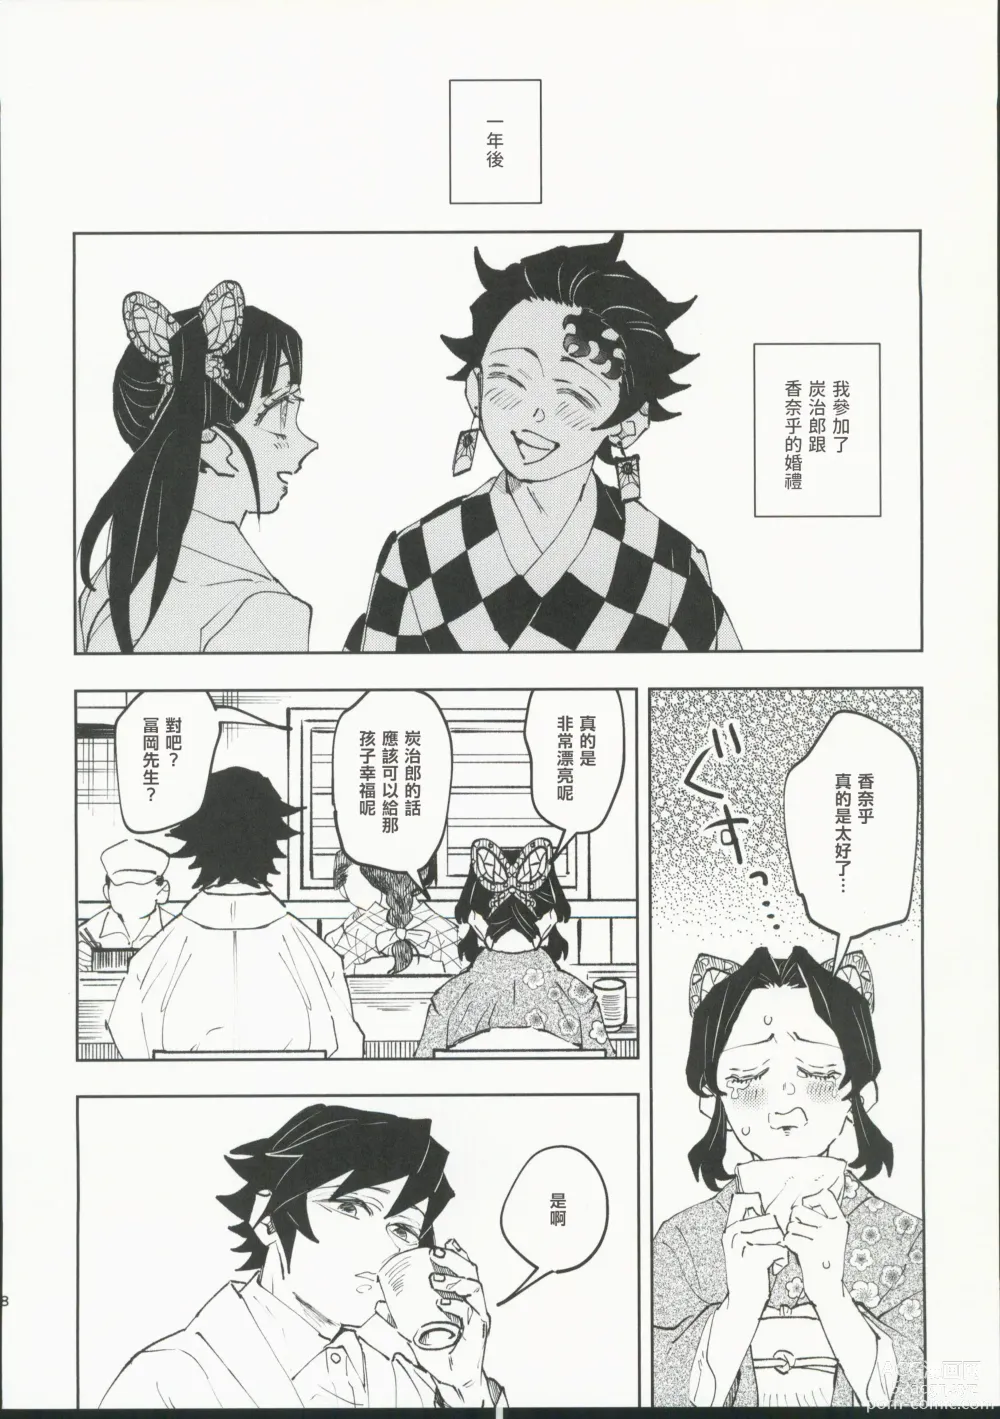 Page 7 of doujinshi Hazama